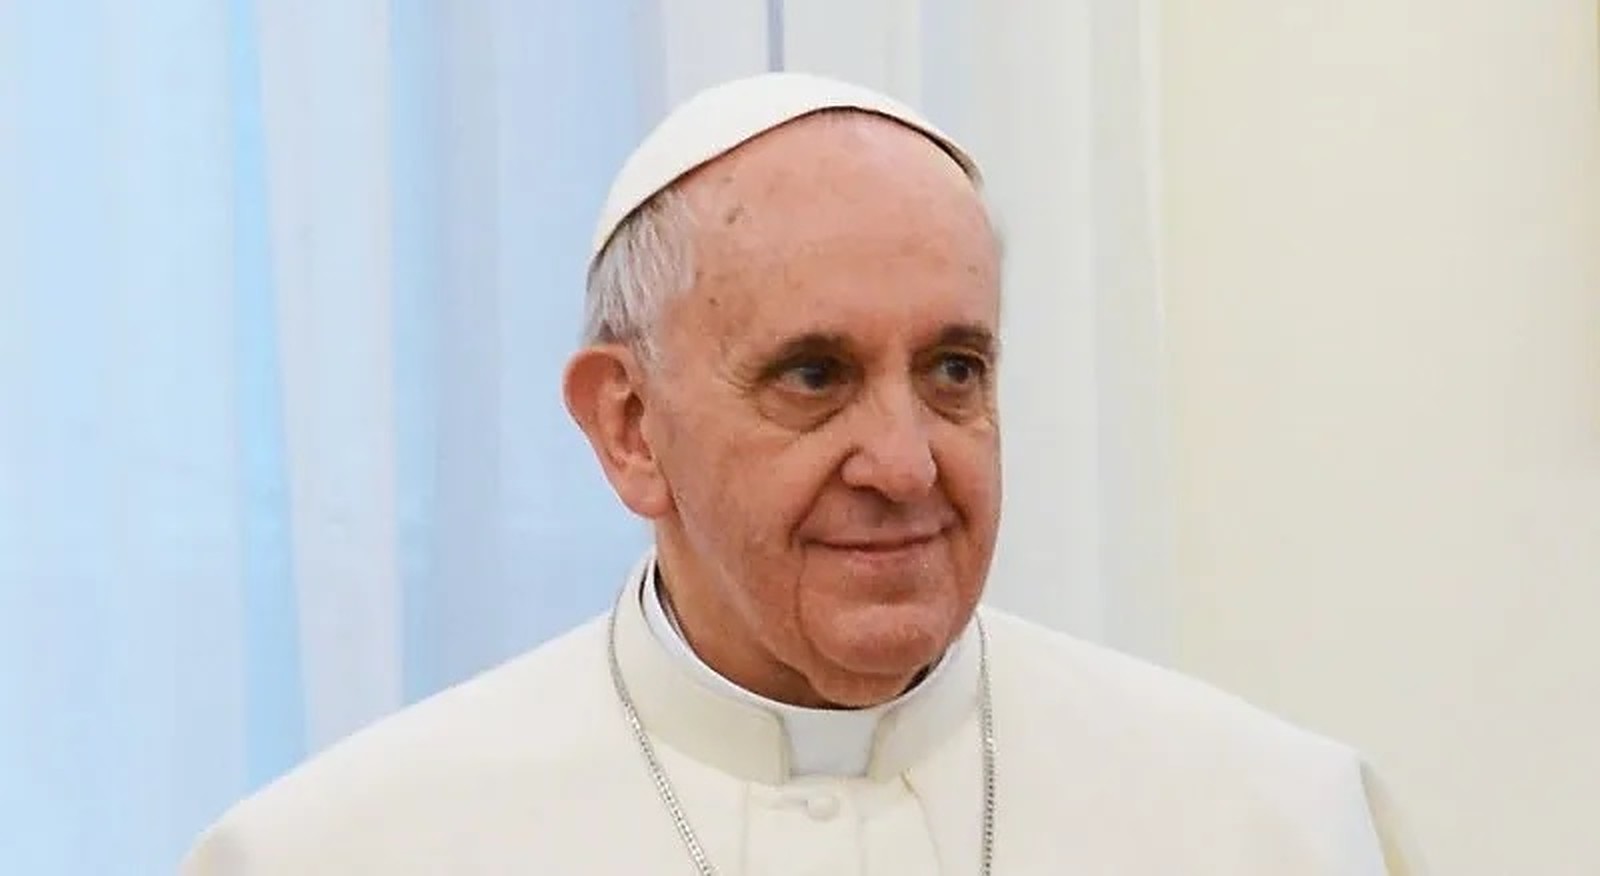 Papa Franjo u novom intervjuu odgovorio što misli o homoseksualnosti i celibatu